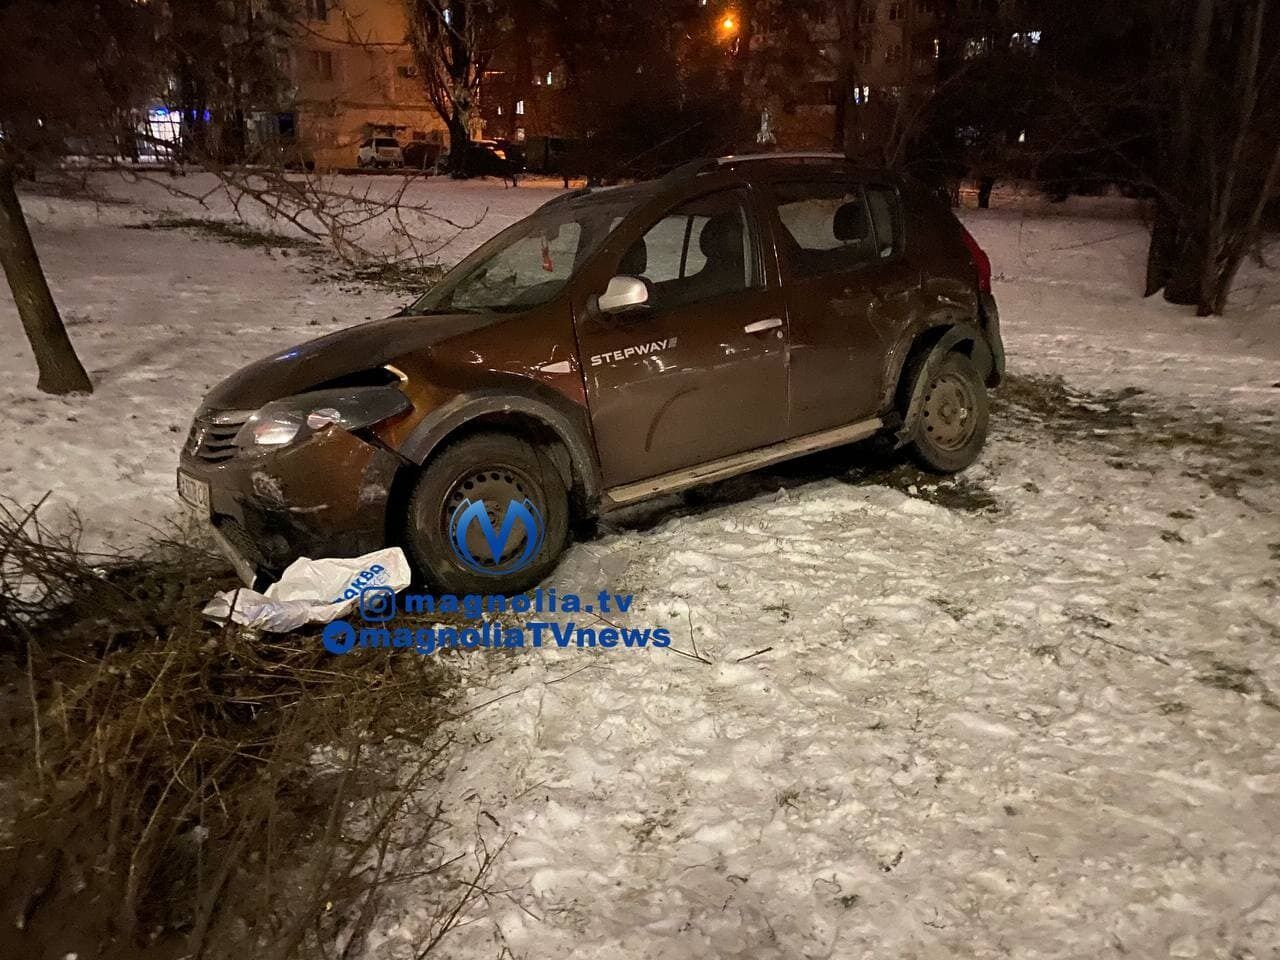 После столкновения Dacia выехала на тротуар.